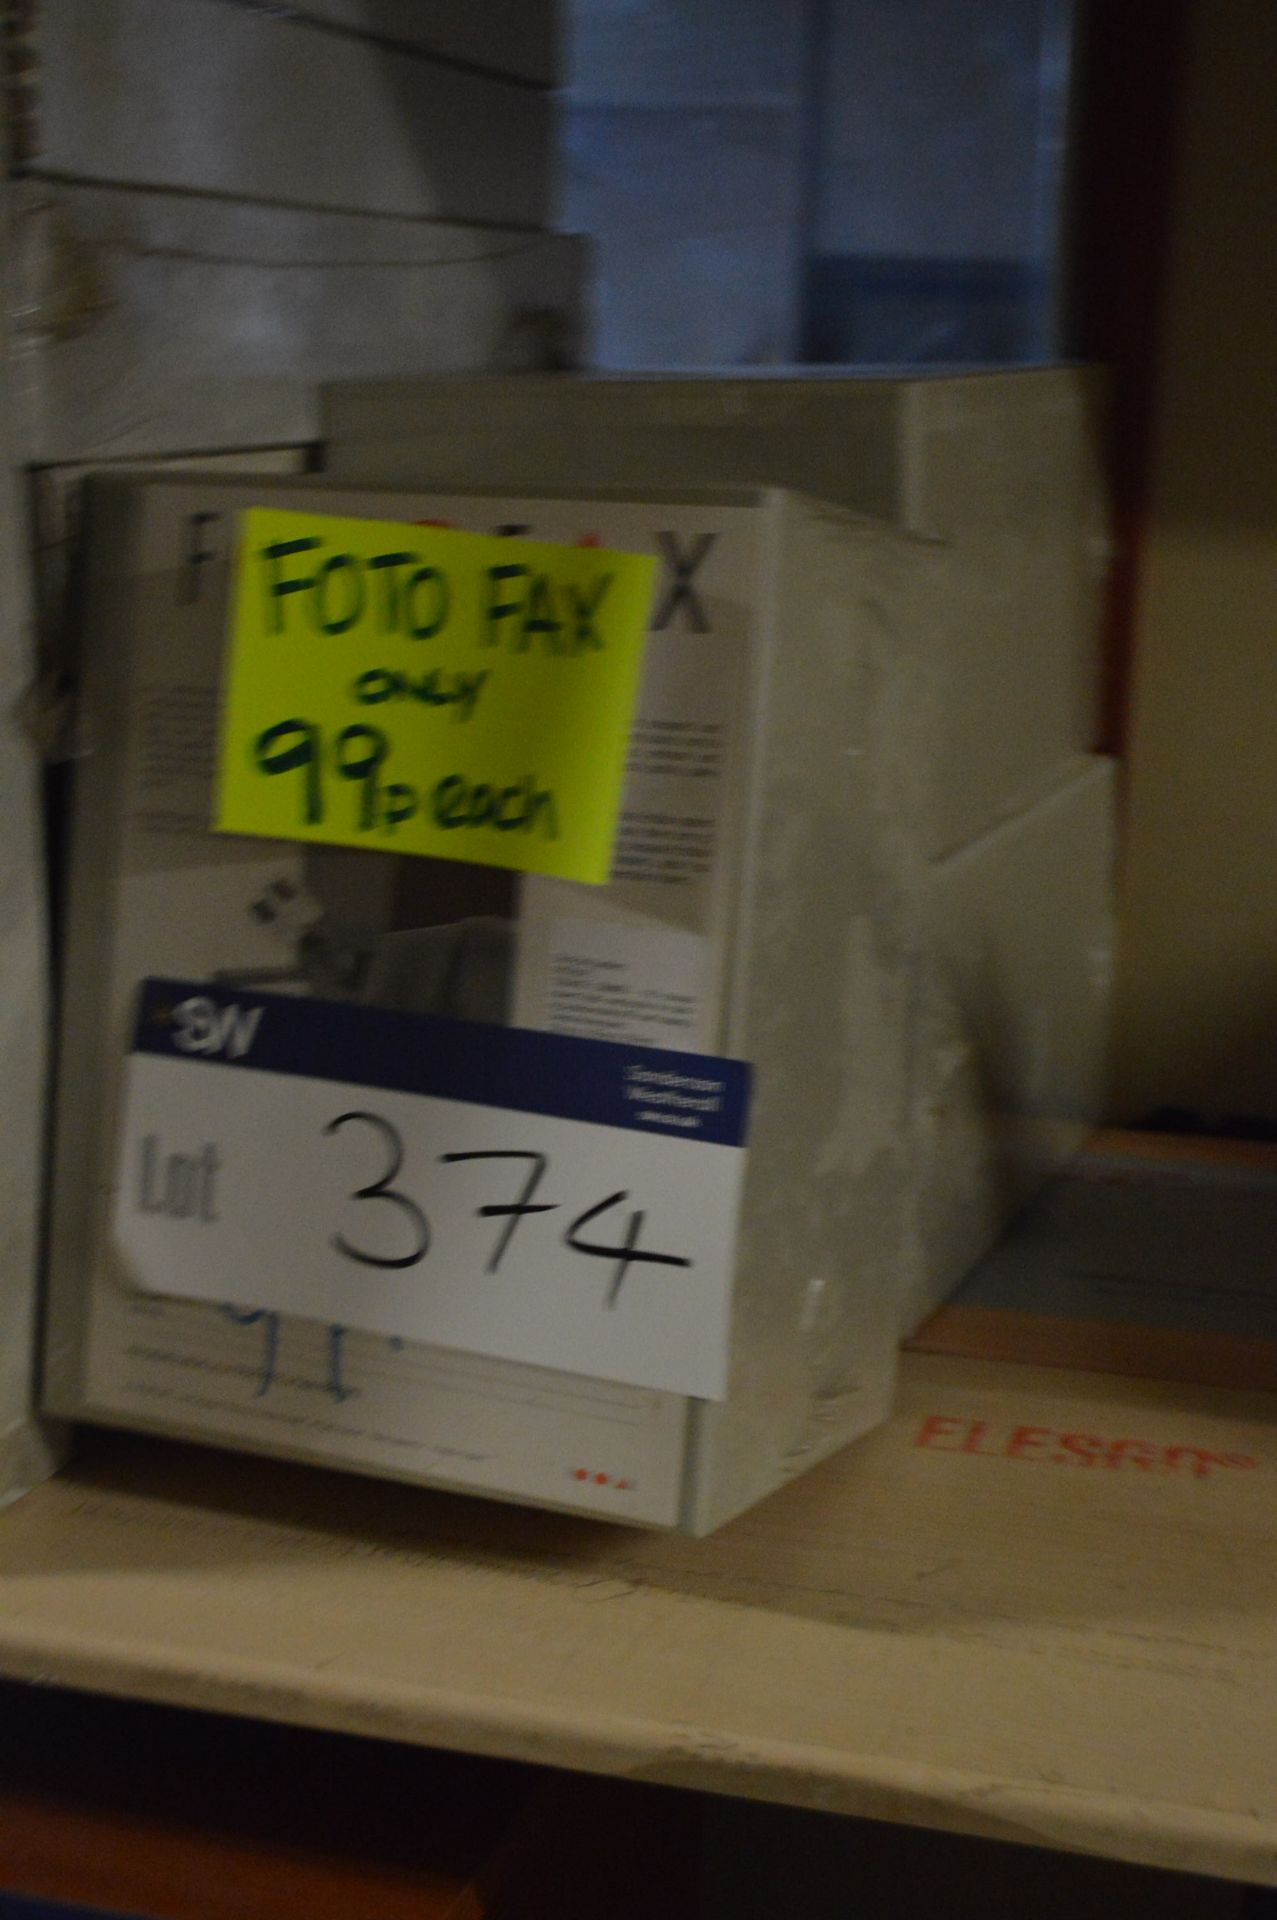 Three Photo Fax Storage Boxes